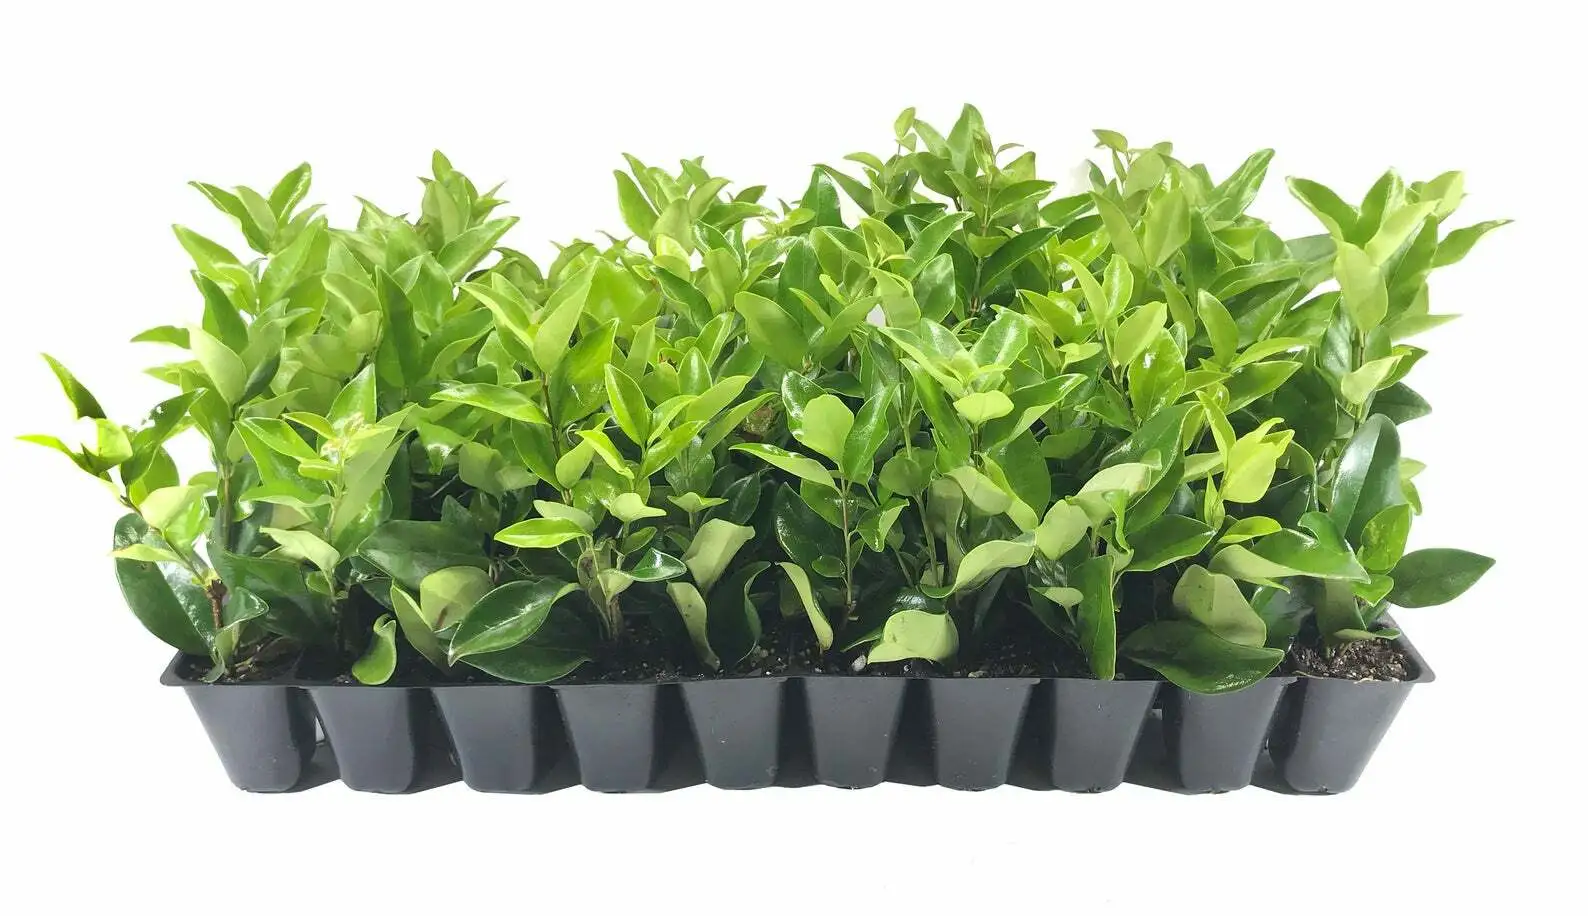 Ligustrum Waxleaf Privet Live Plants Flowering Privacy Hedge Shrub - $39.41